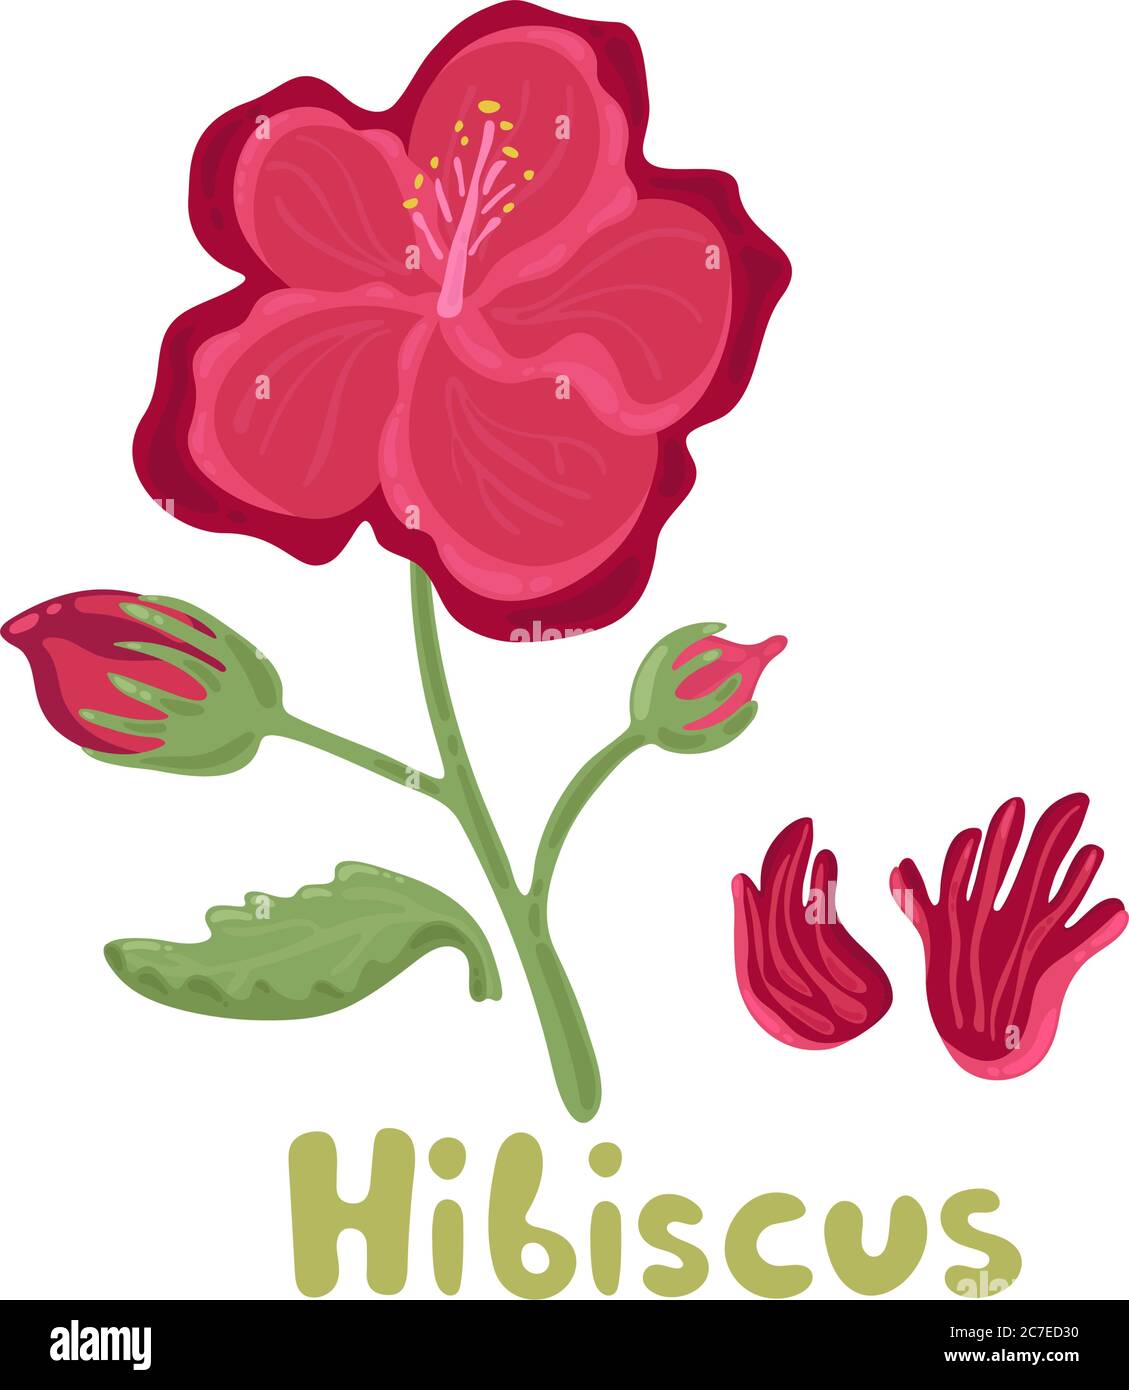 Hibiskusblüte. Tropische Blumen helle Farbe Vektor Illustration. Tropisch blühende Hibiskusblüte mit Blättern. Kulinarischer Kräuterhibiskus Stock Vektor